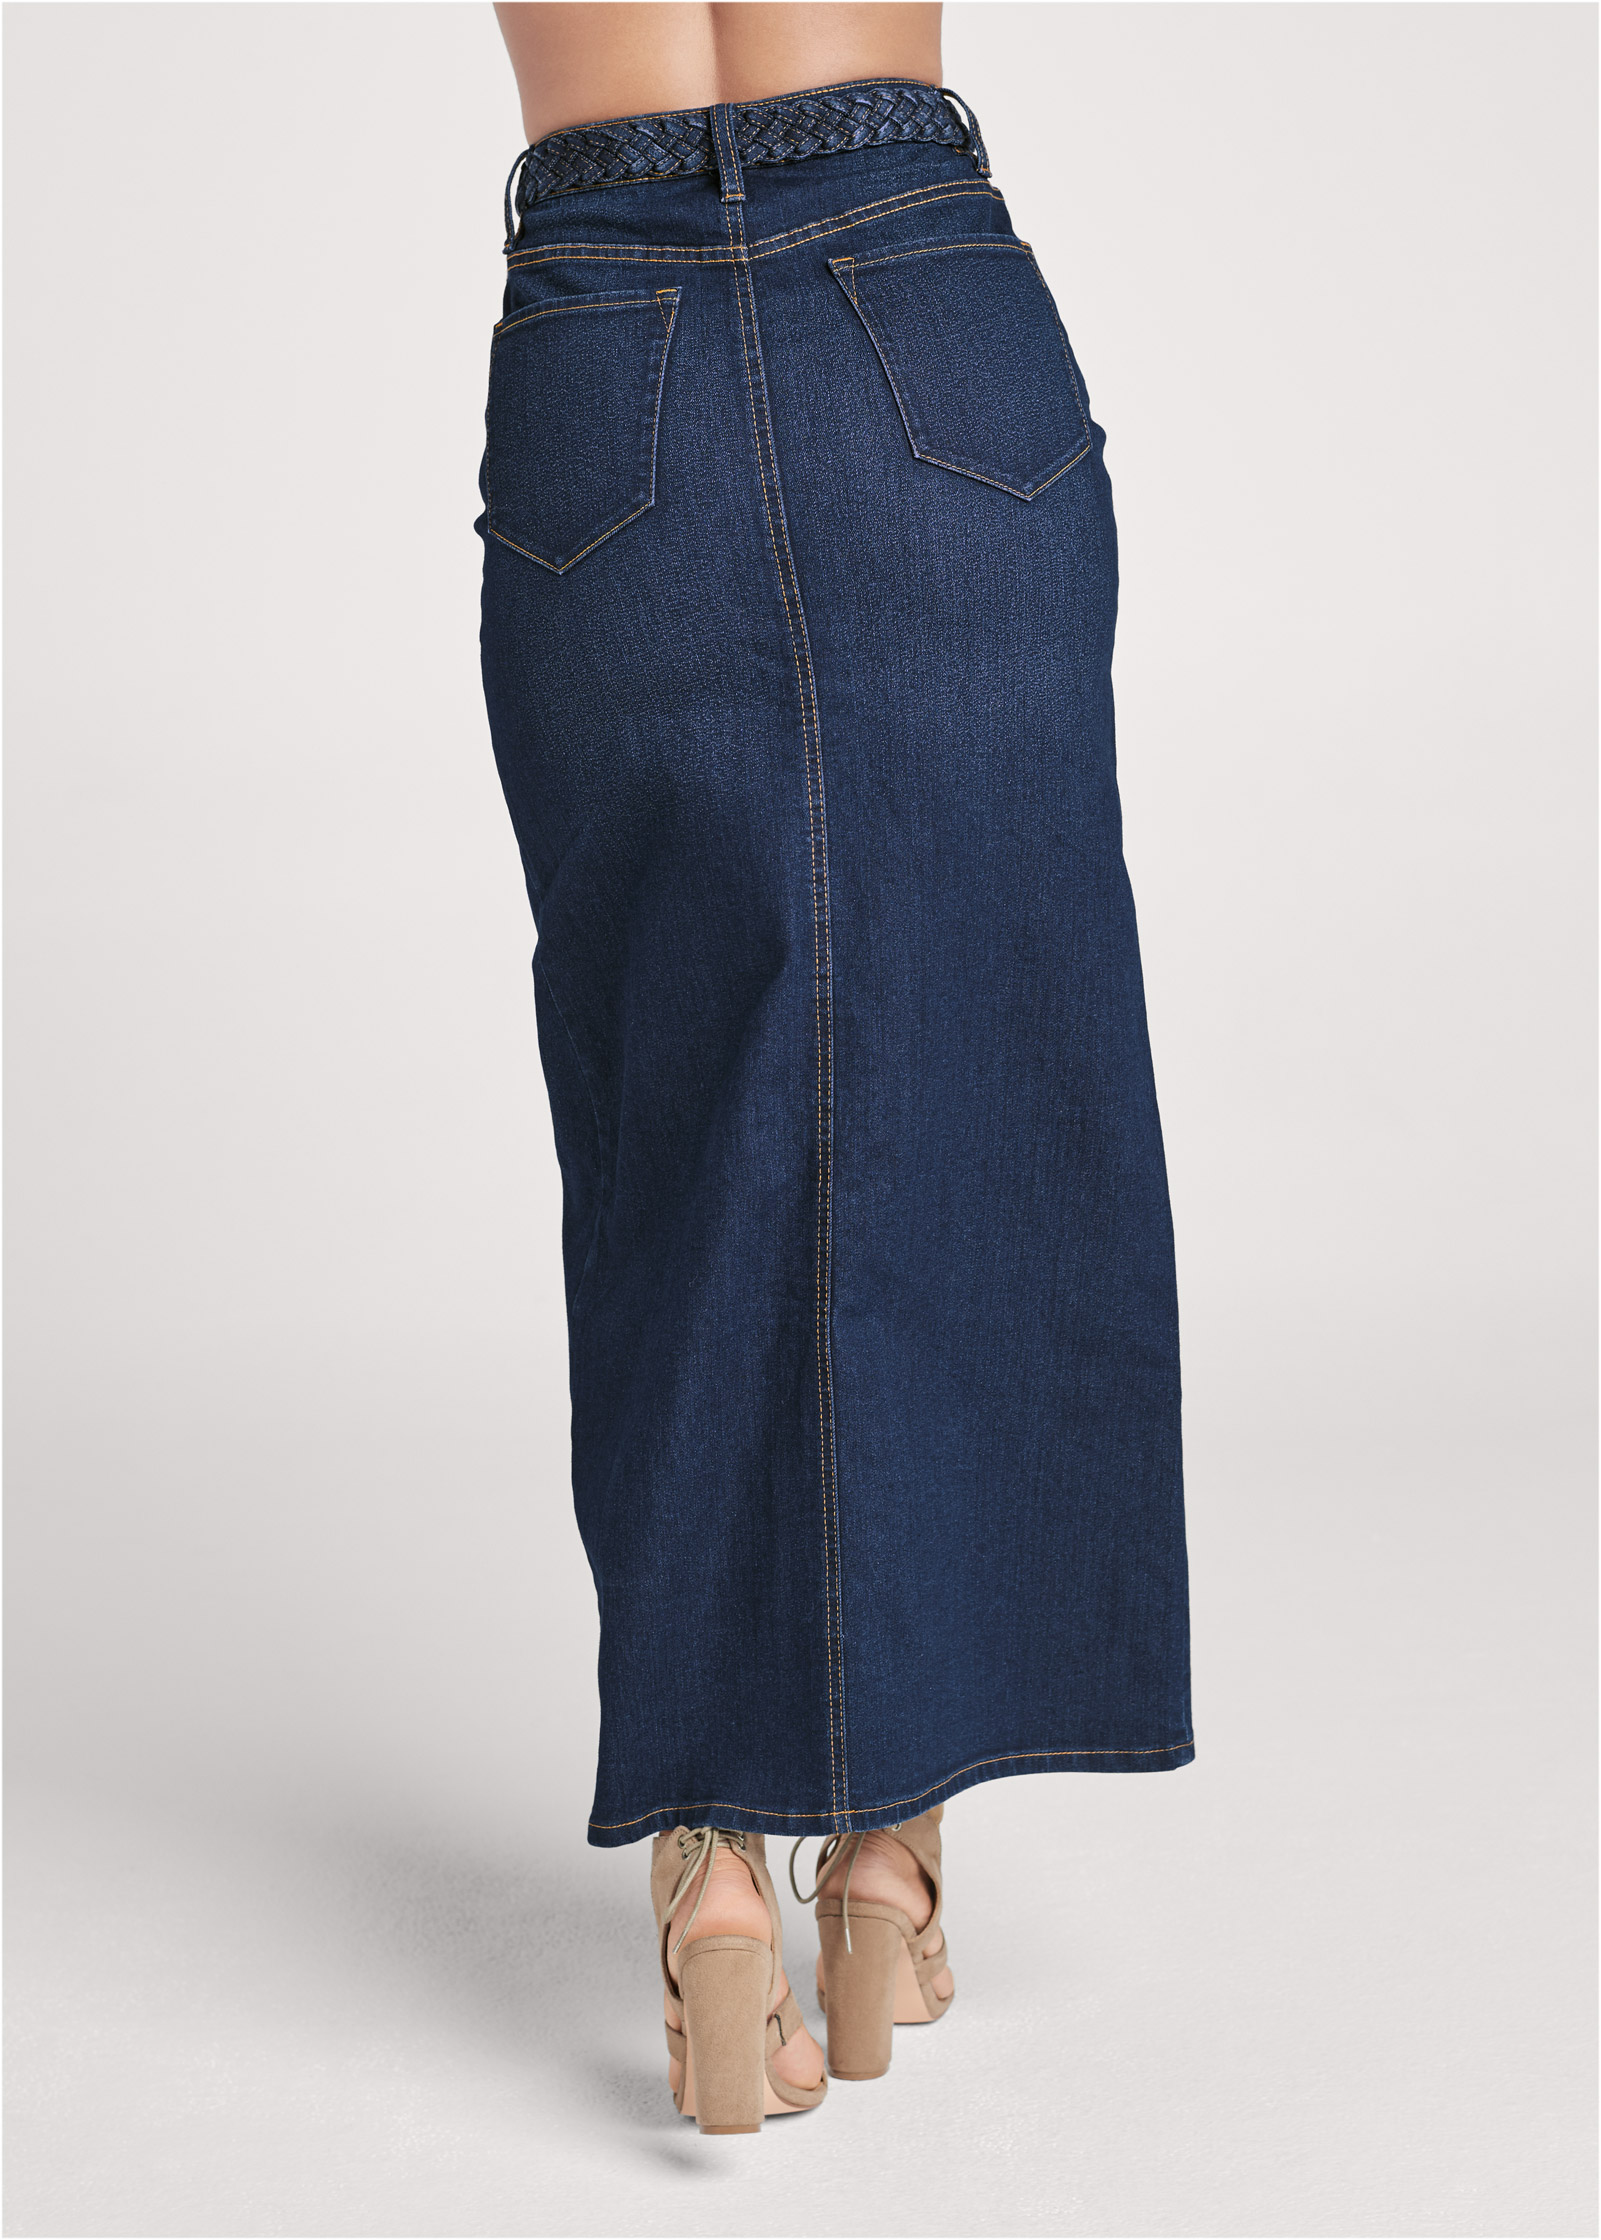 Front Slit Jean Maxi Skirt in Dark Wash | VENUS